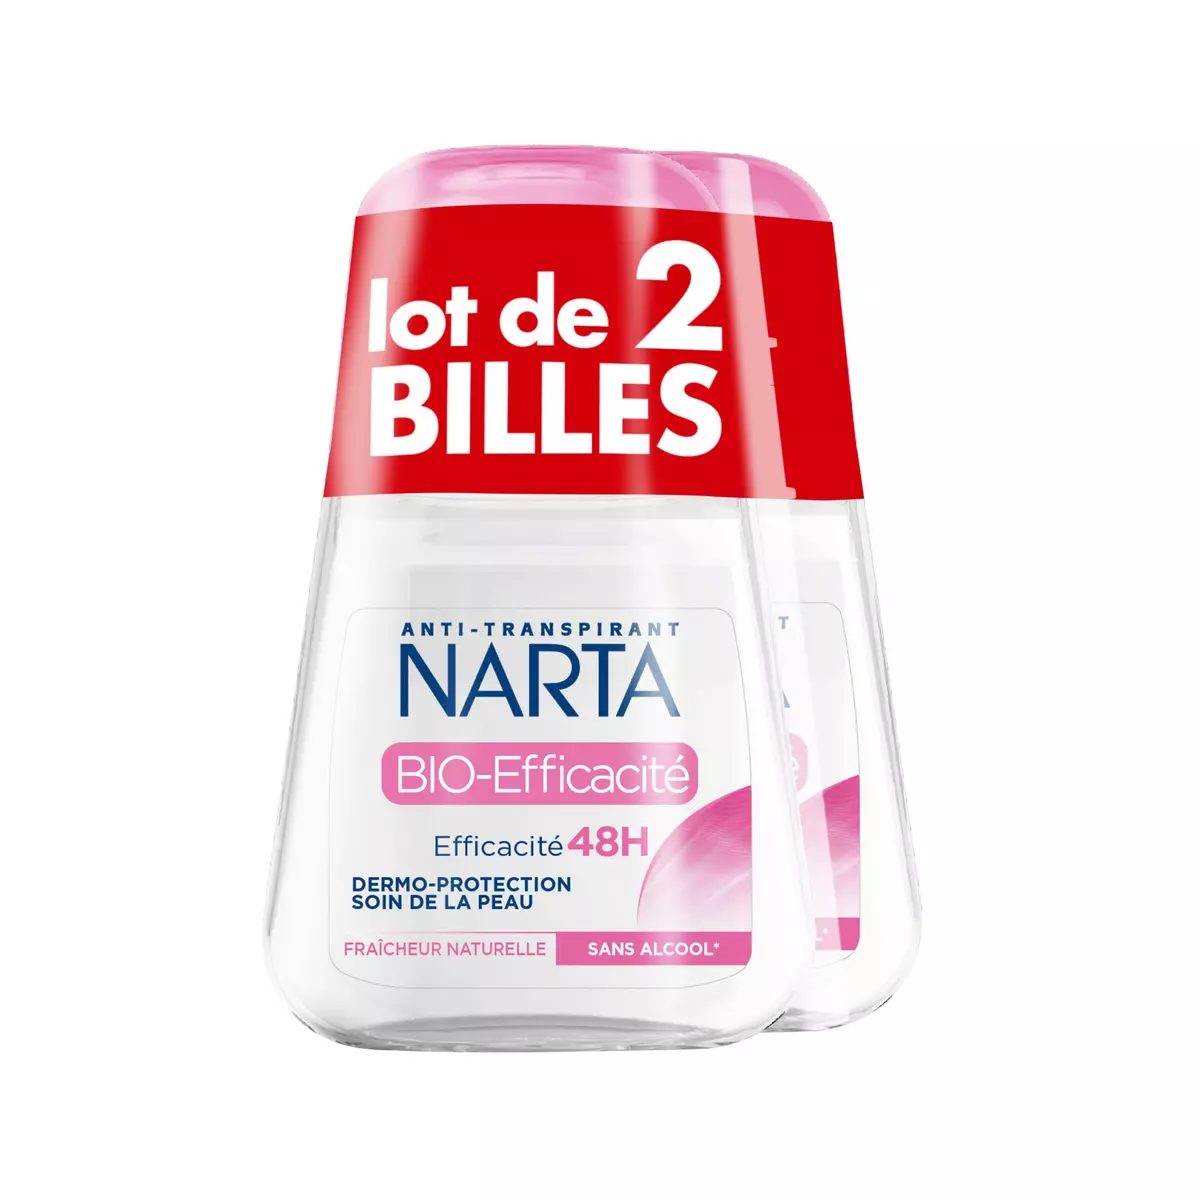 NARTA Déo bille bio Efficacité dermo protection 48h sans alcool 2x50ml